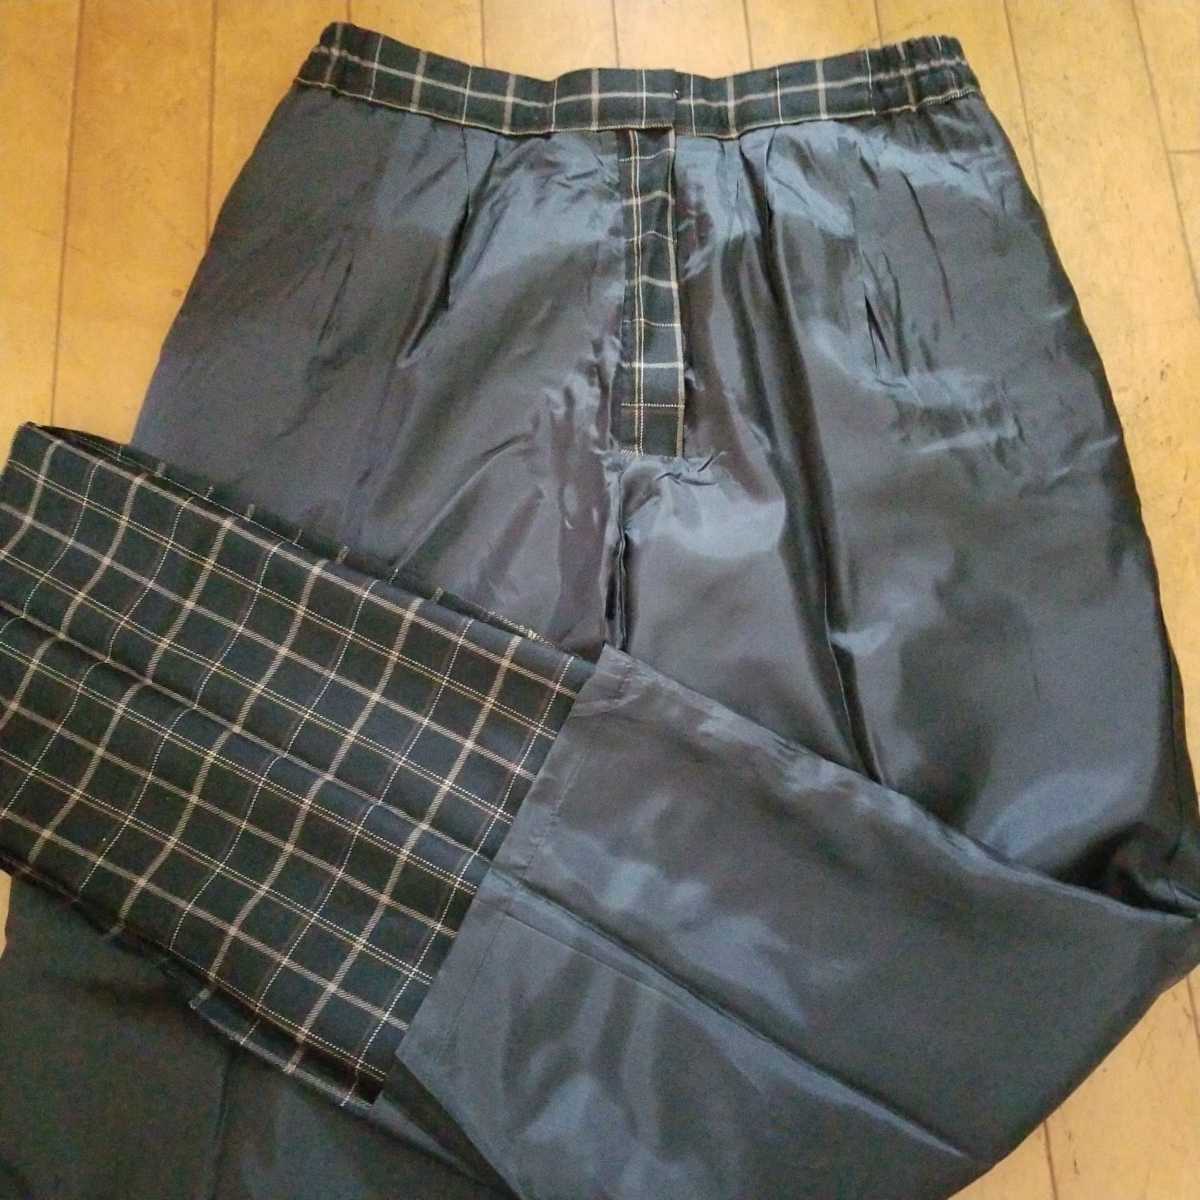  новый товар MUNSINGWEAR Munsingwear одежда / женский водоотталкивающий омыватель bru брюки осень-зима предмет / черный /13 номер W74~78./ обычная цена Y20900(19000+ налог )/ сделано в Японии 